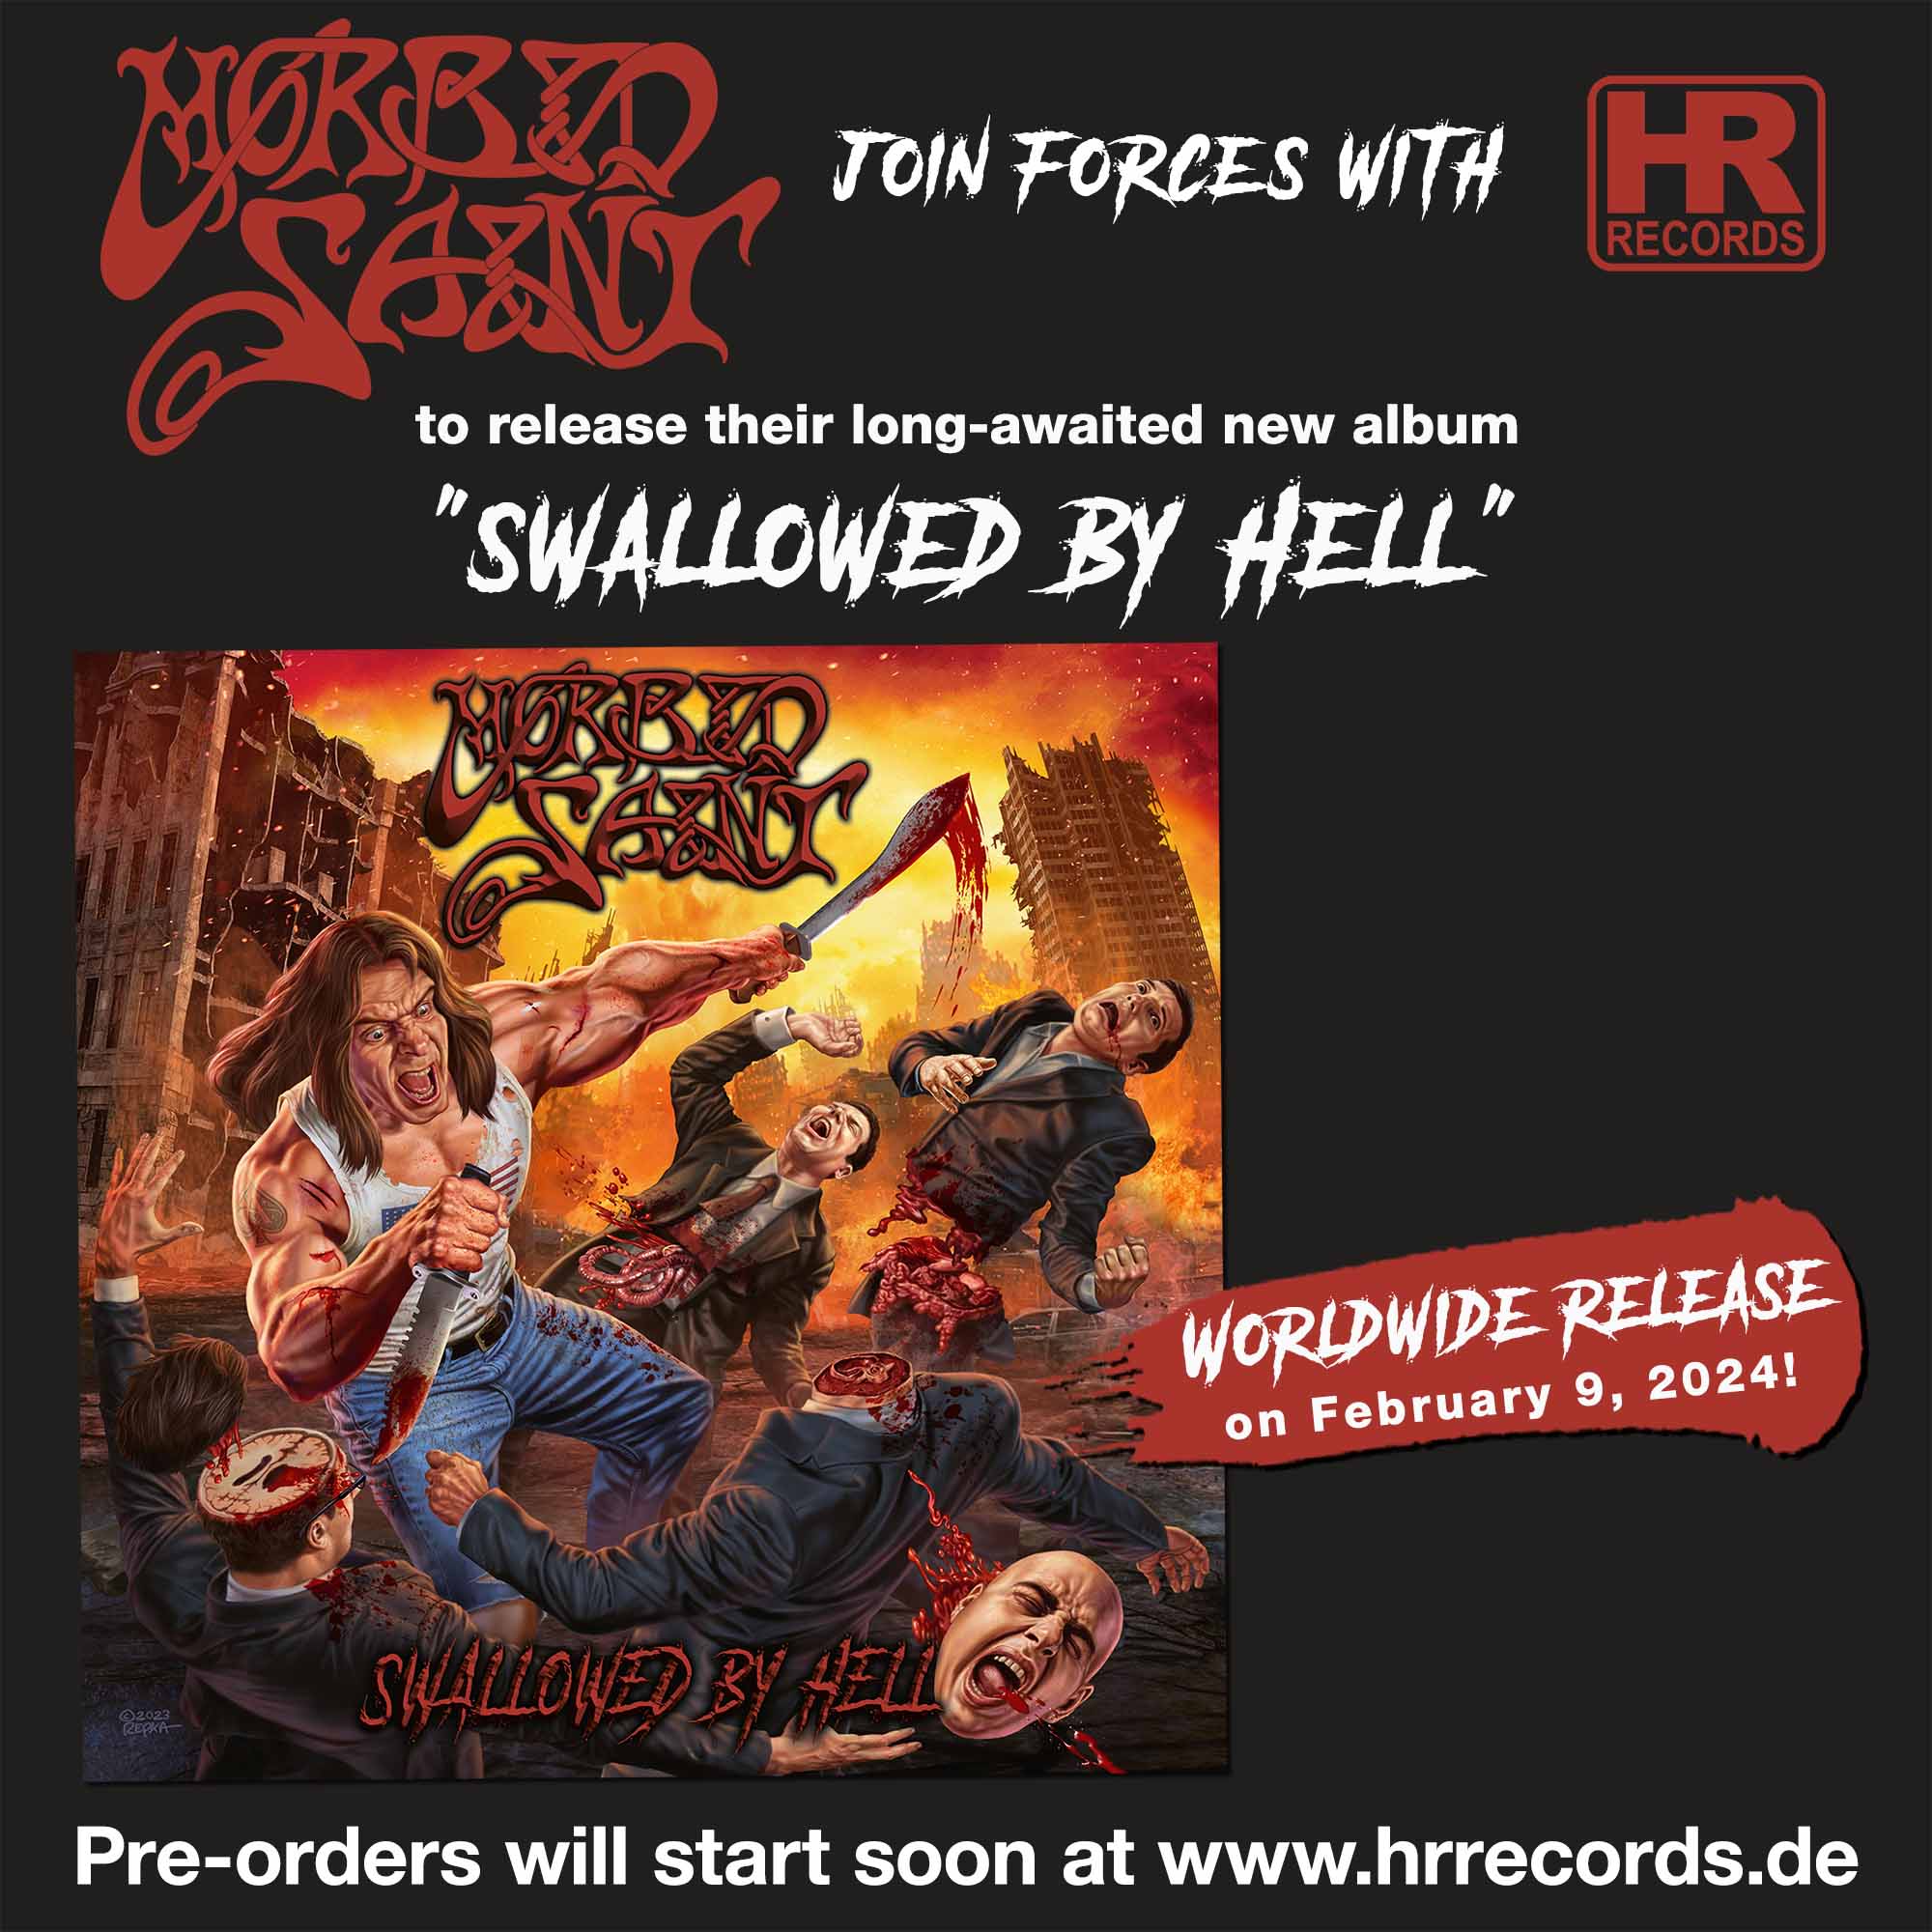 Werbung für das Morbid-Saint-Album "Swallowed By Hell"